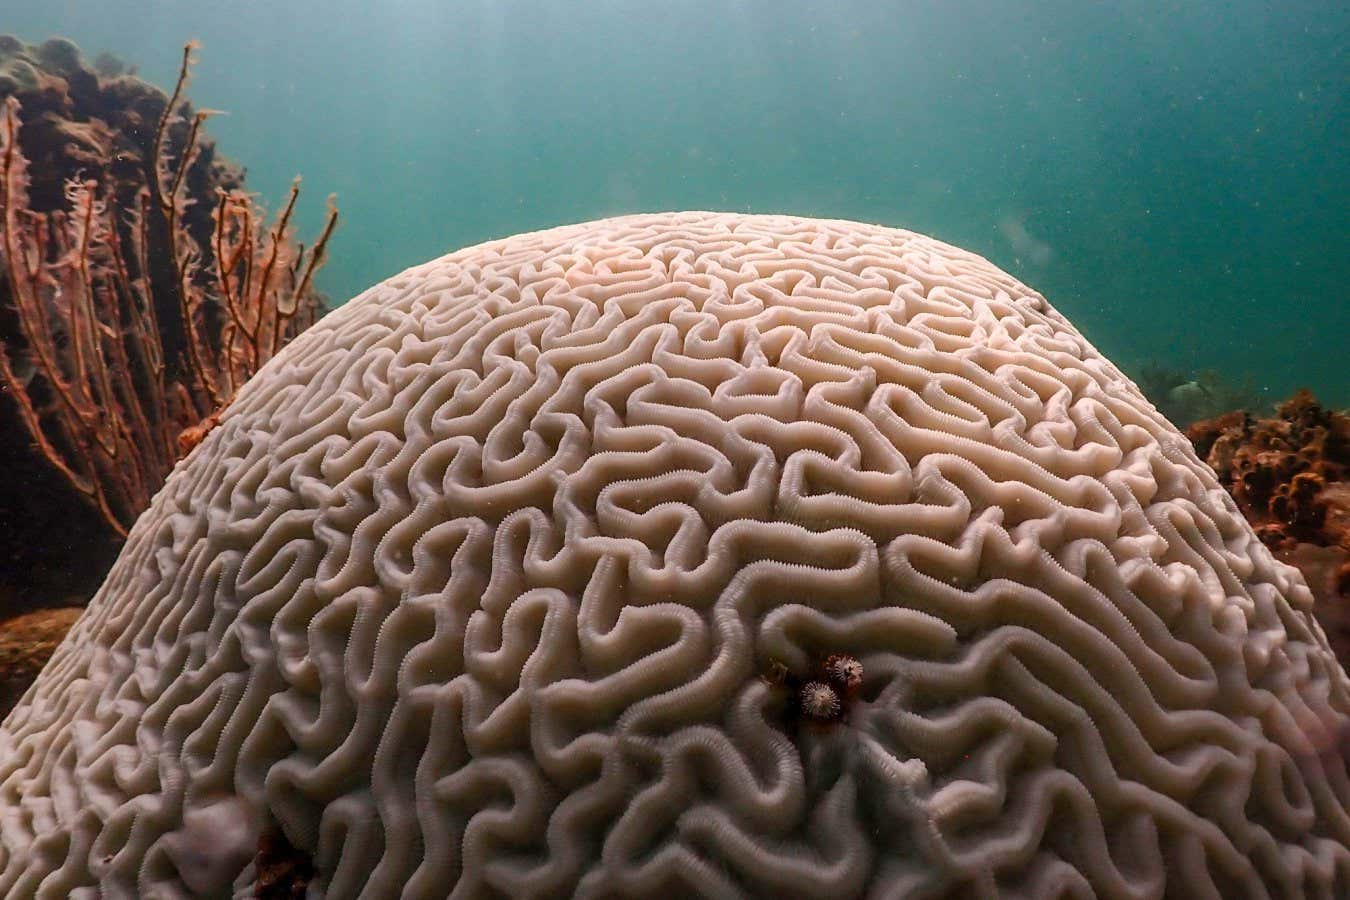 Emettere suoni sottomarini potrebbe assistere le barriere coralline nella lotta contro il surriscaldamento globale